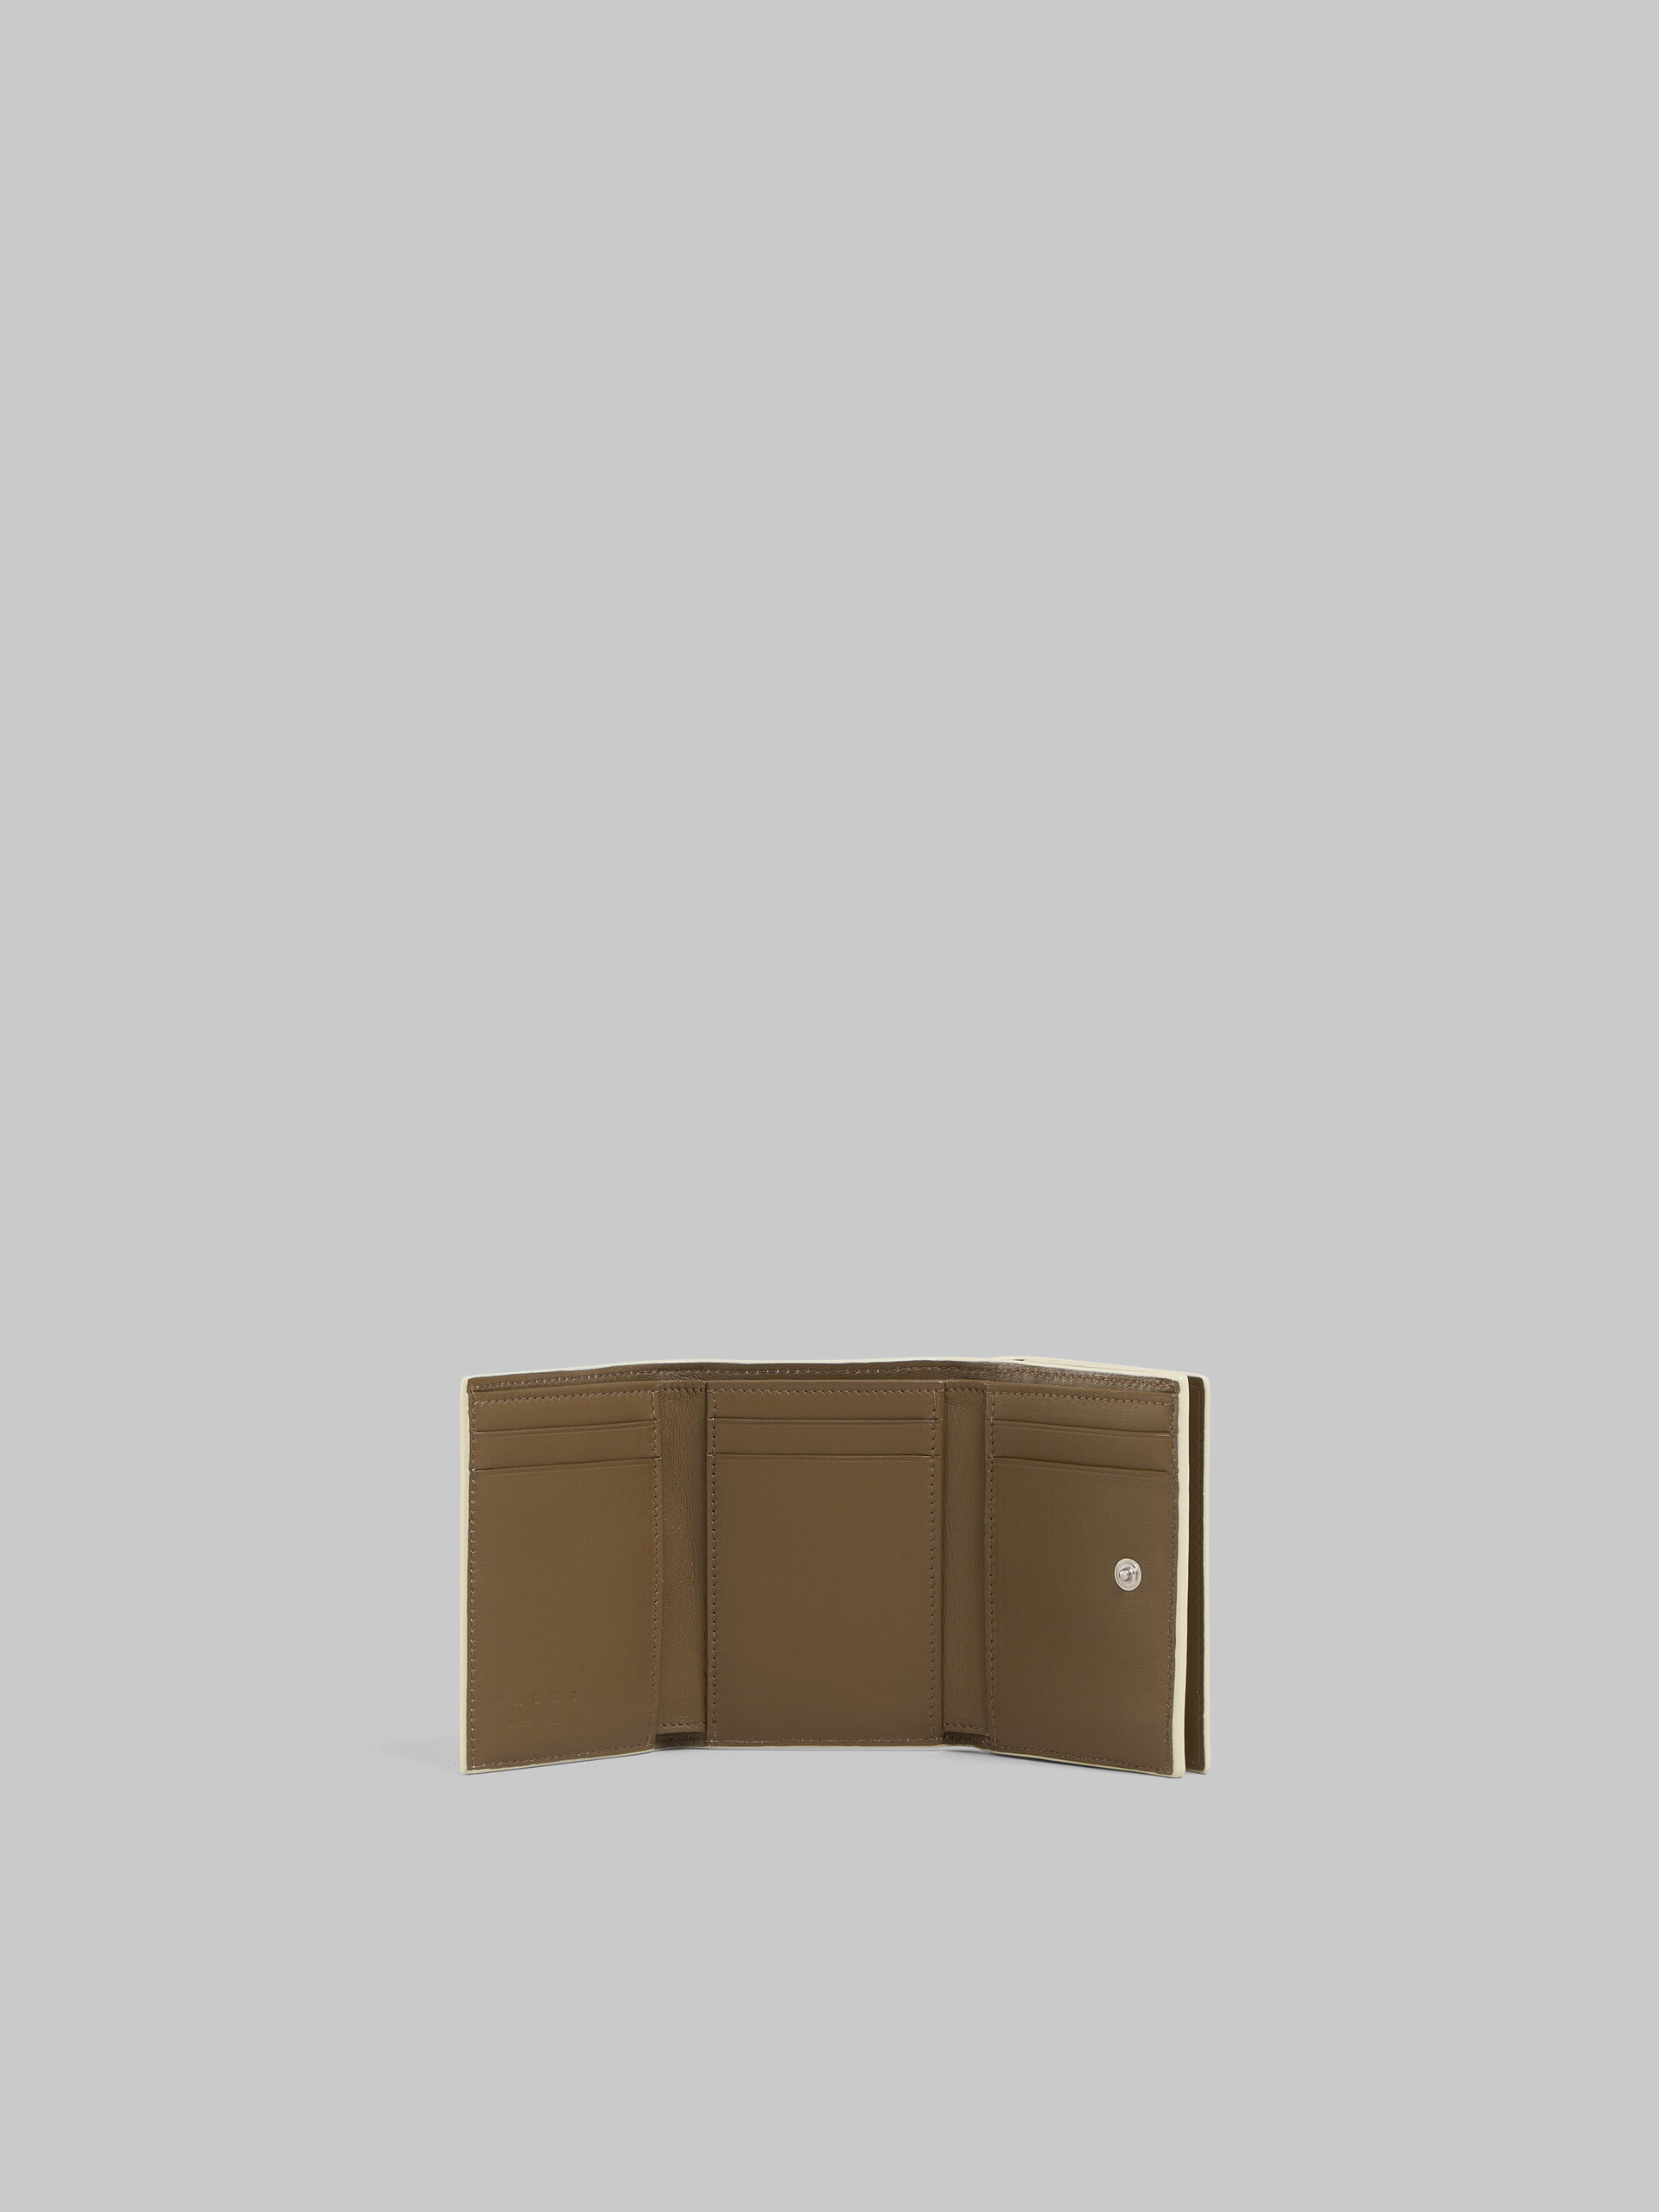 Dreifache Faltbrieftasche aus Leder mit Marni-Flicken in Schwarz - Brieftaschen - Image 2